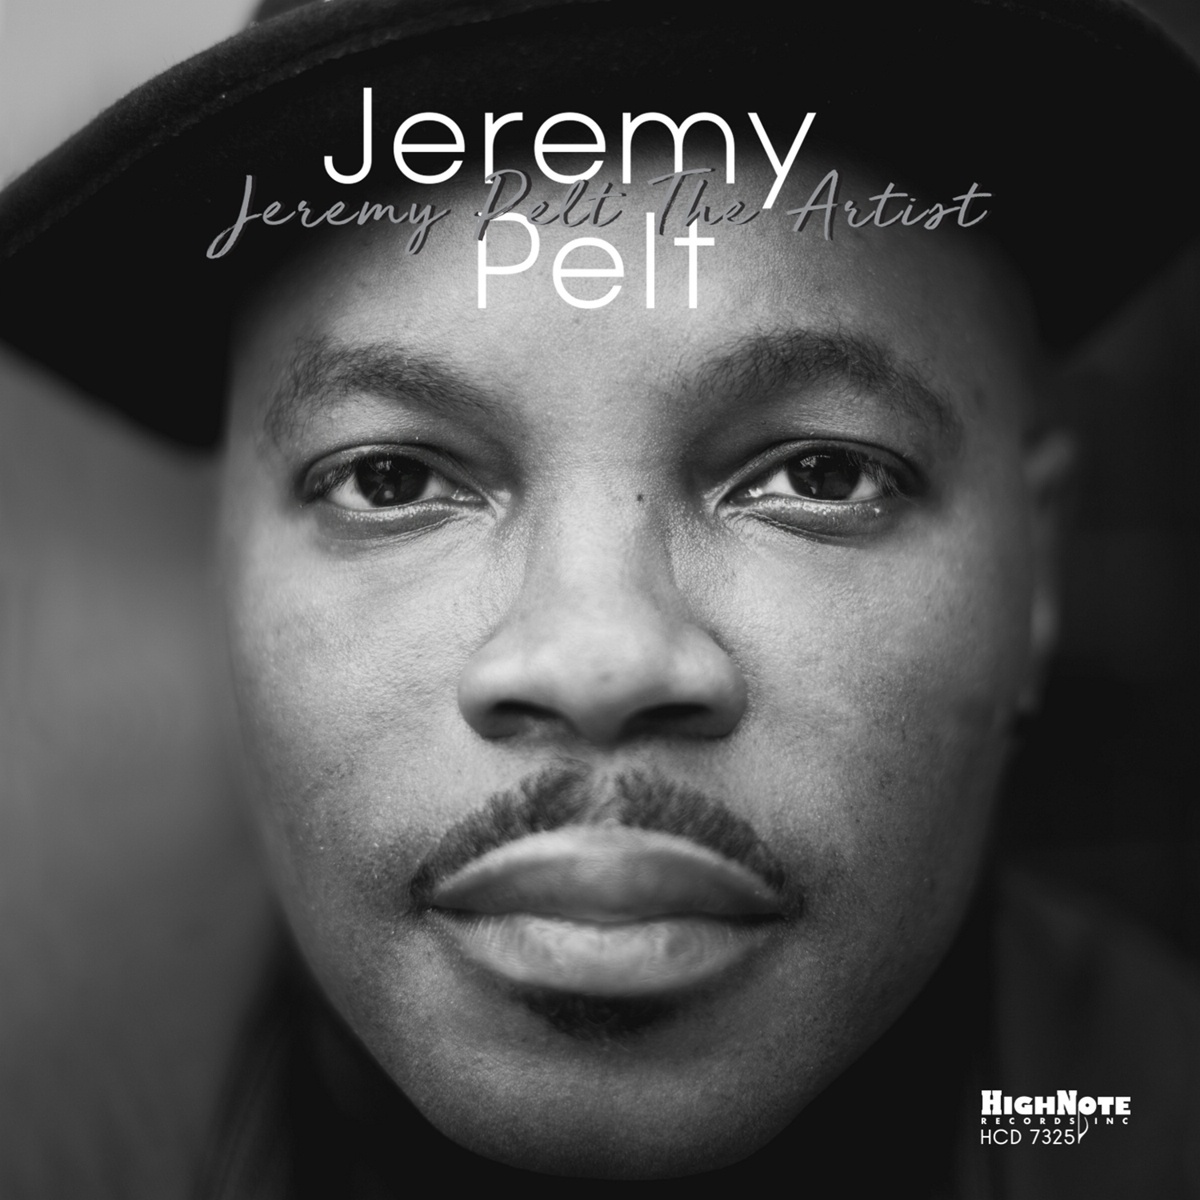 Jeremy Pelt The Artist - Jeremy Pelt. (CD)